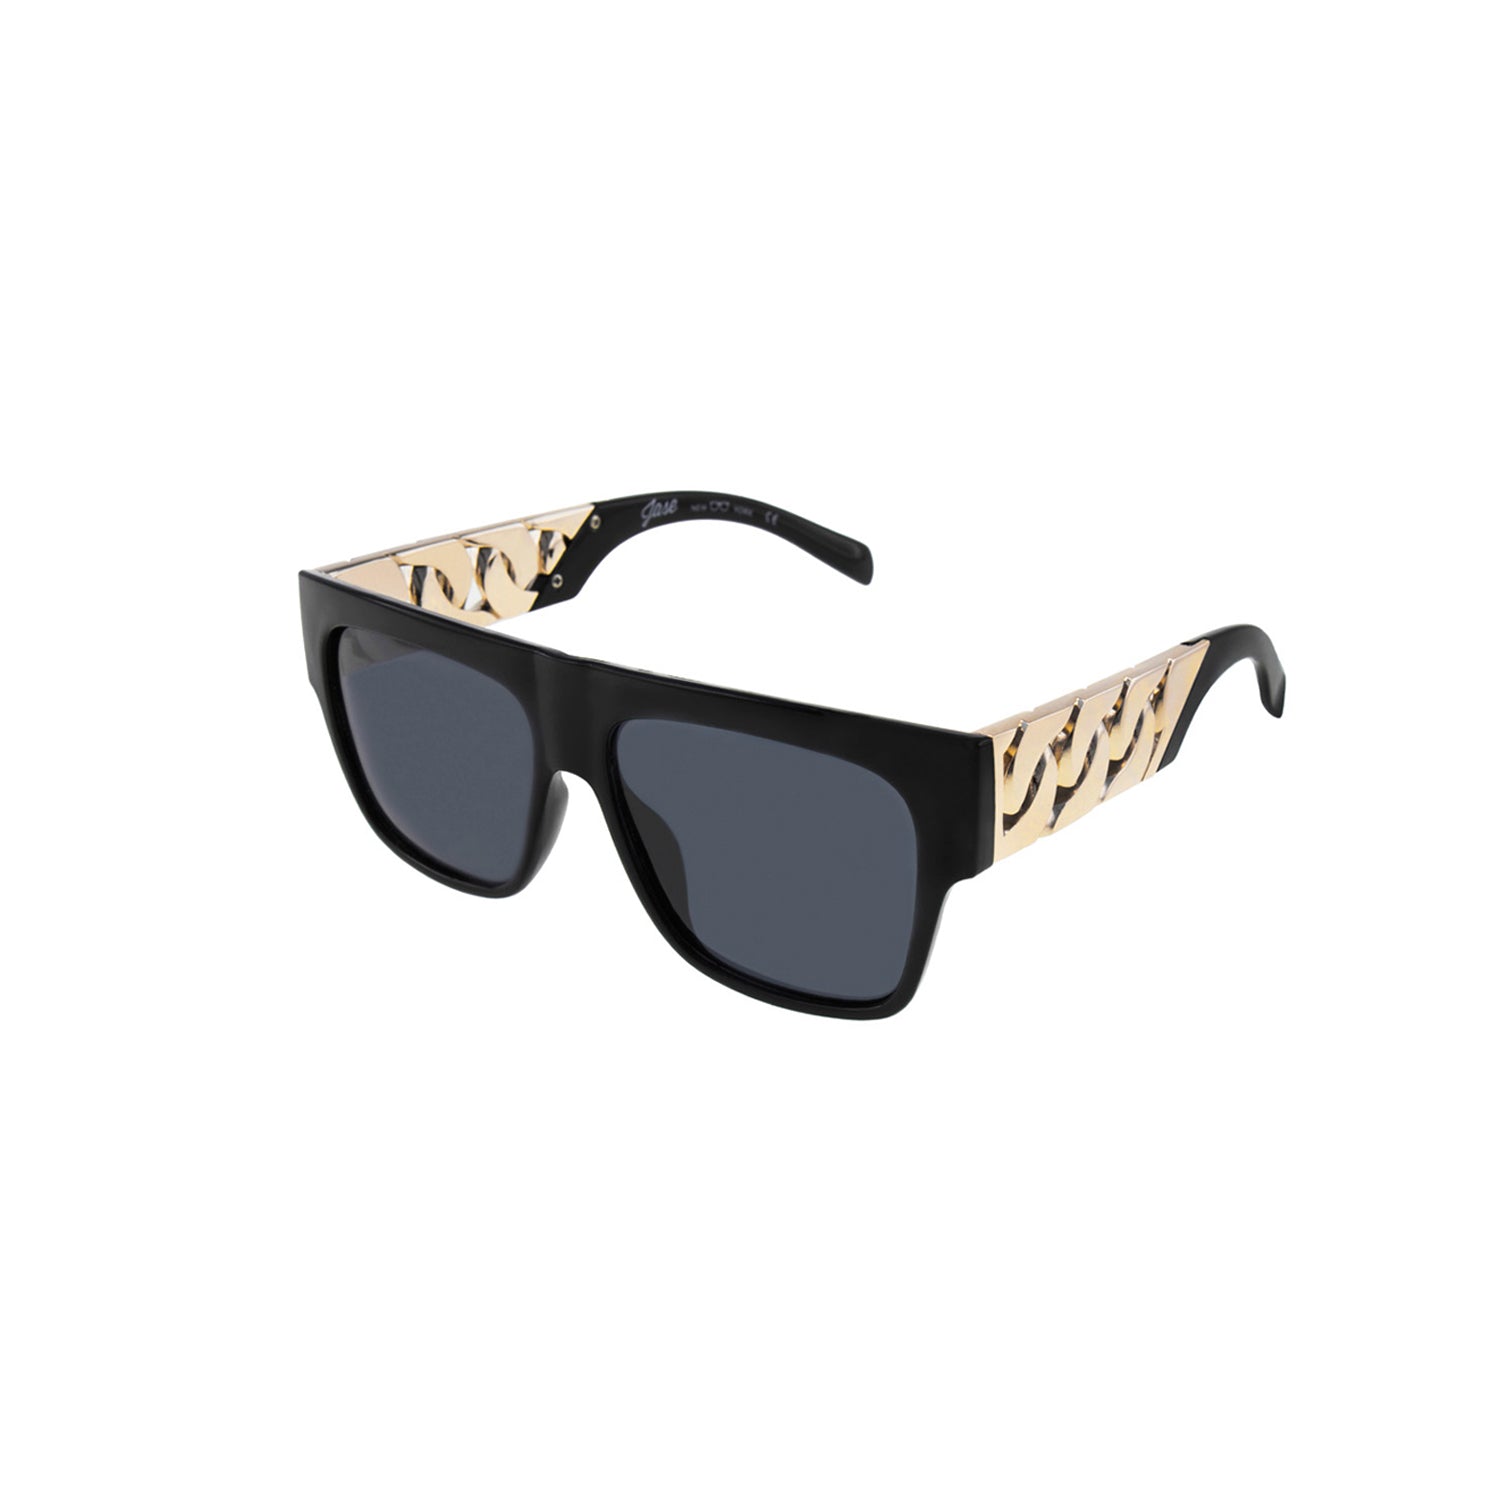 Jase New York Cache Sunglasses in Matte Black